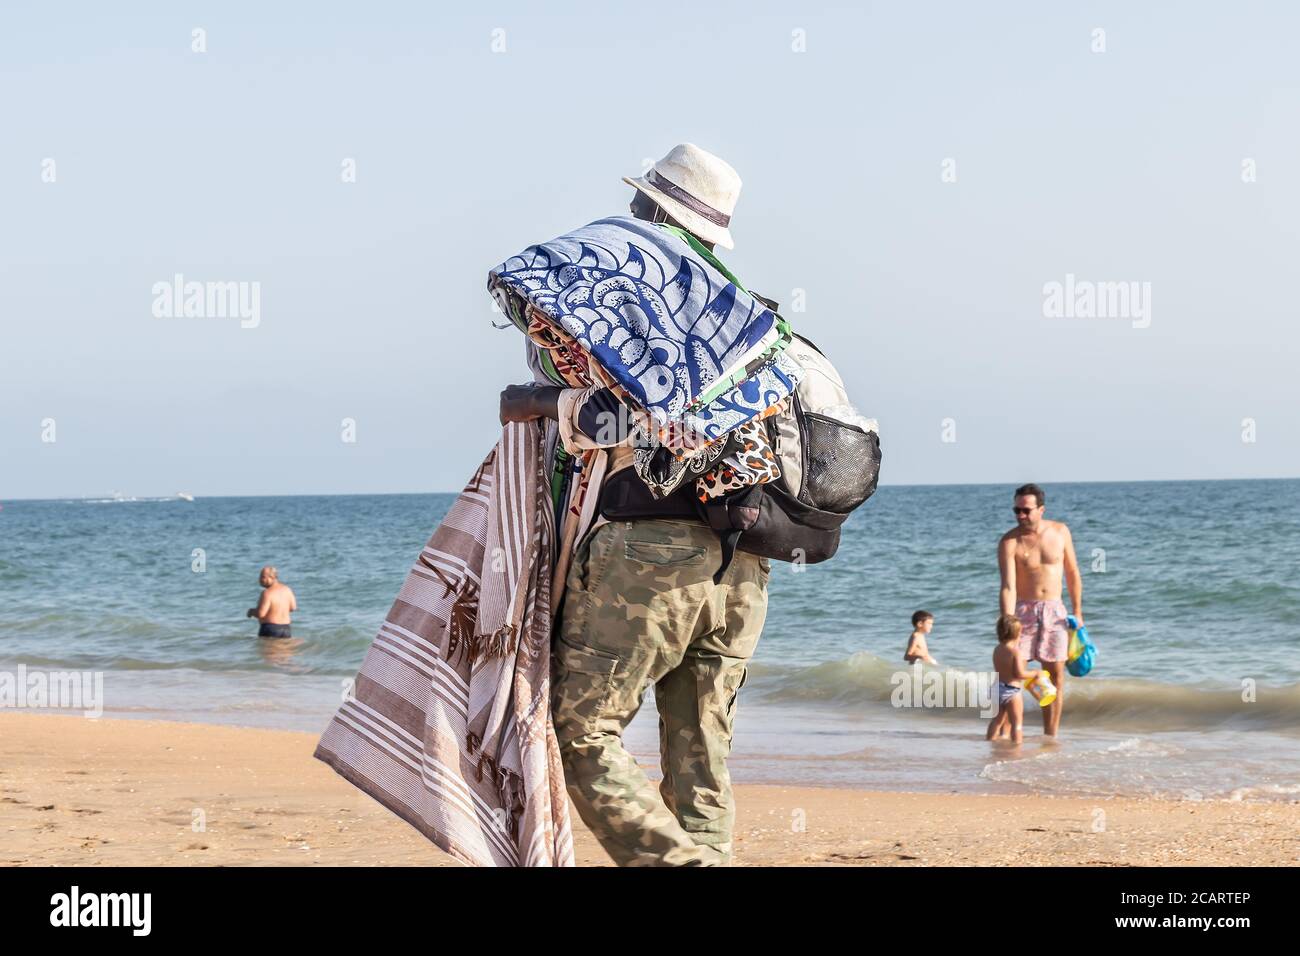 Punta Umbria, Huelva, Spagna - 7 agosto 2020: Immigranti africani che vendono i loro articoli sulla spiaggia indossando maschera protettiva o medica. Tutti i beni di Foto Stock